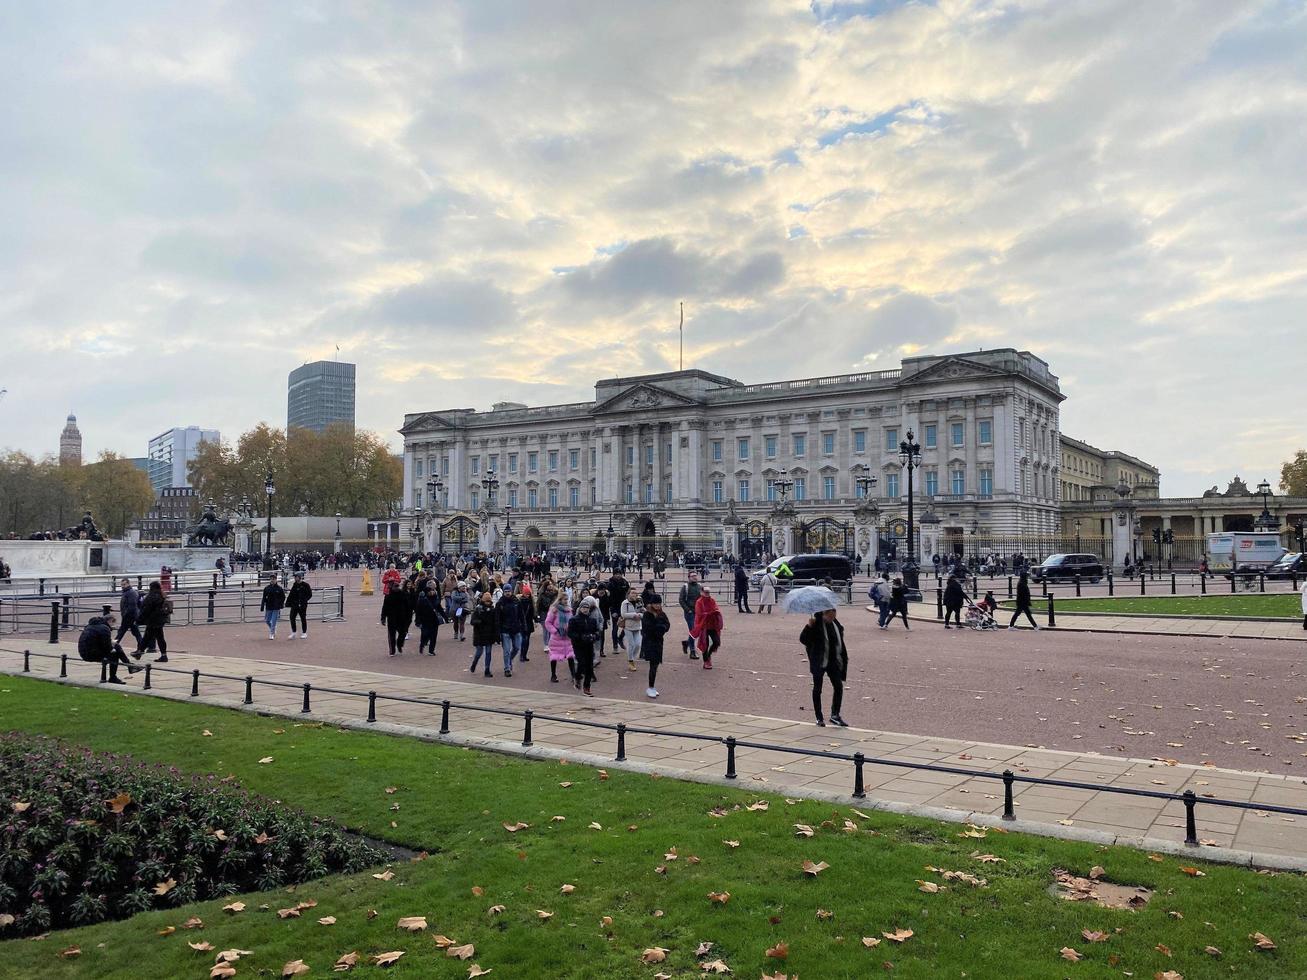 Londen in de uk in december 2022. een visie van Buckingham paleis in Londen foto